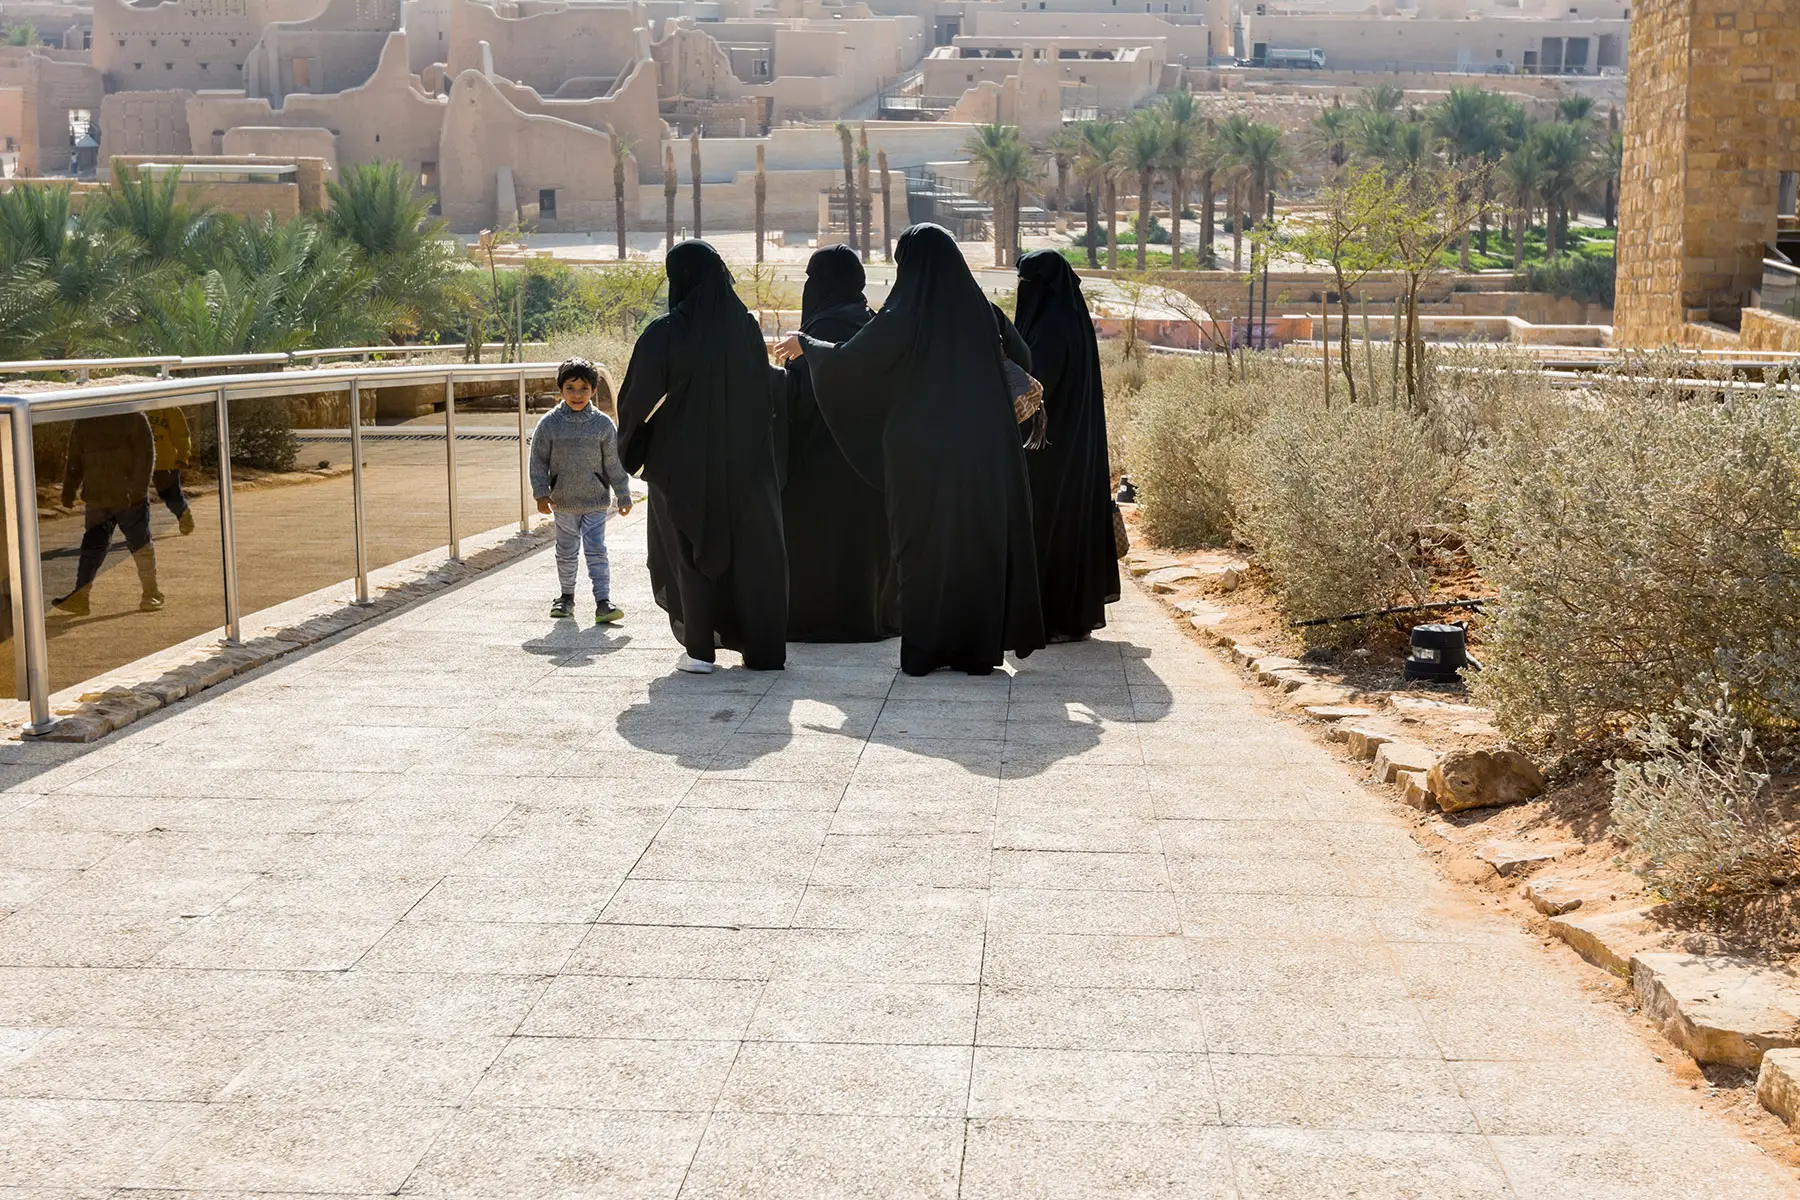 Women wearing black abayas in Riyadh, Saudi Arabia